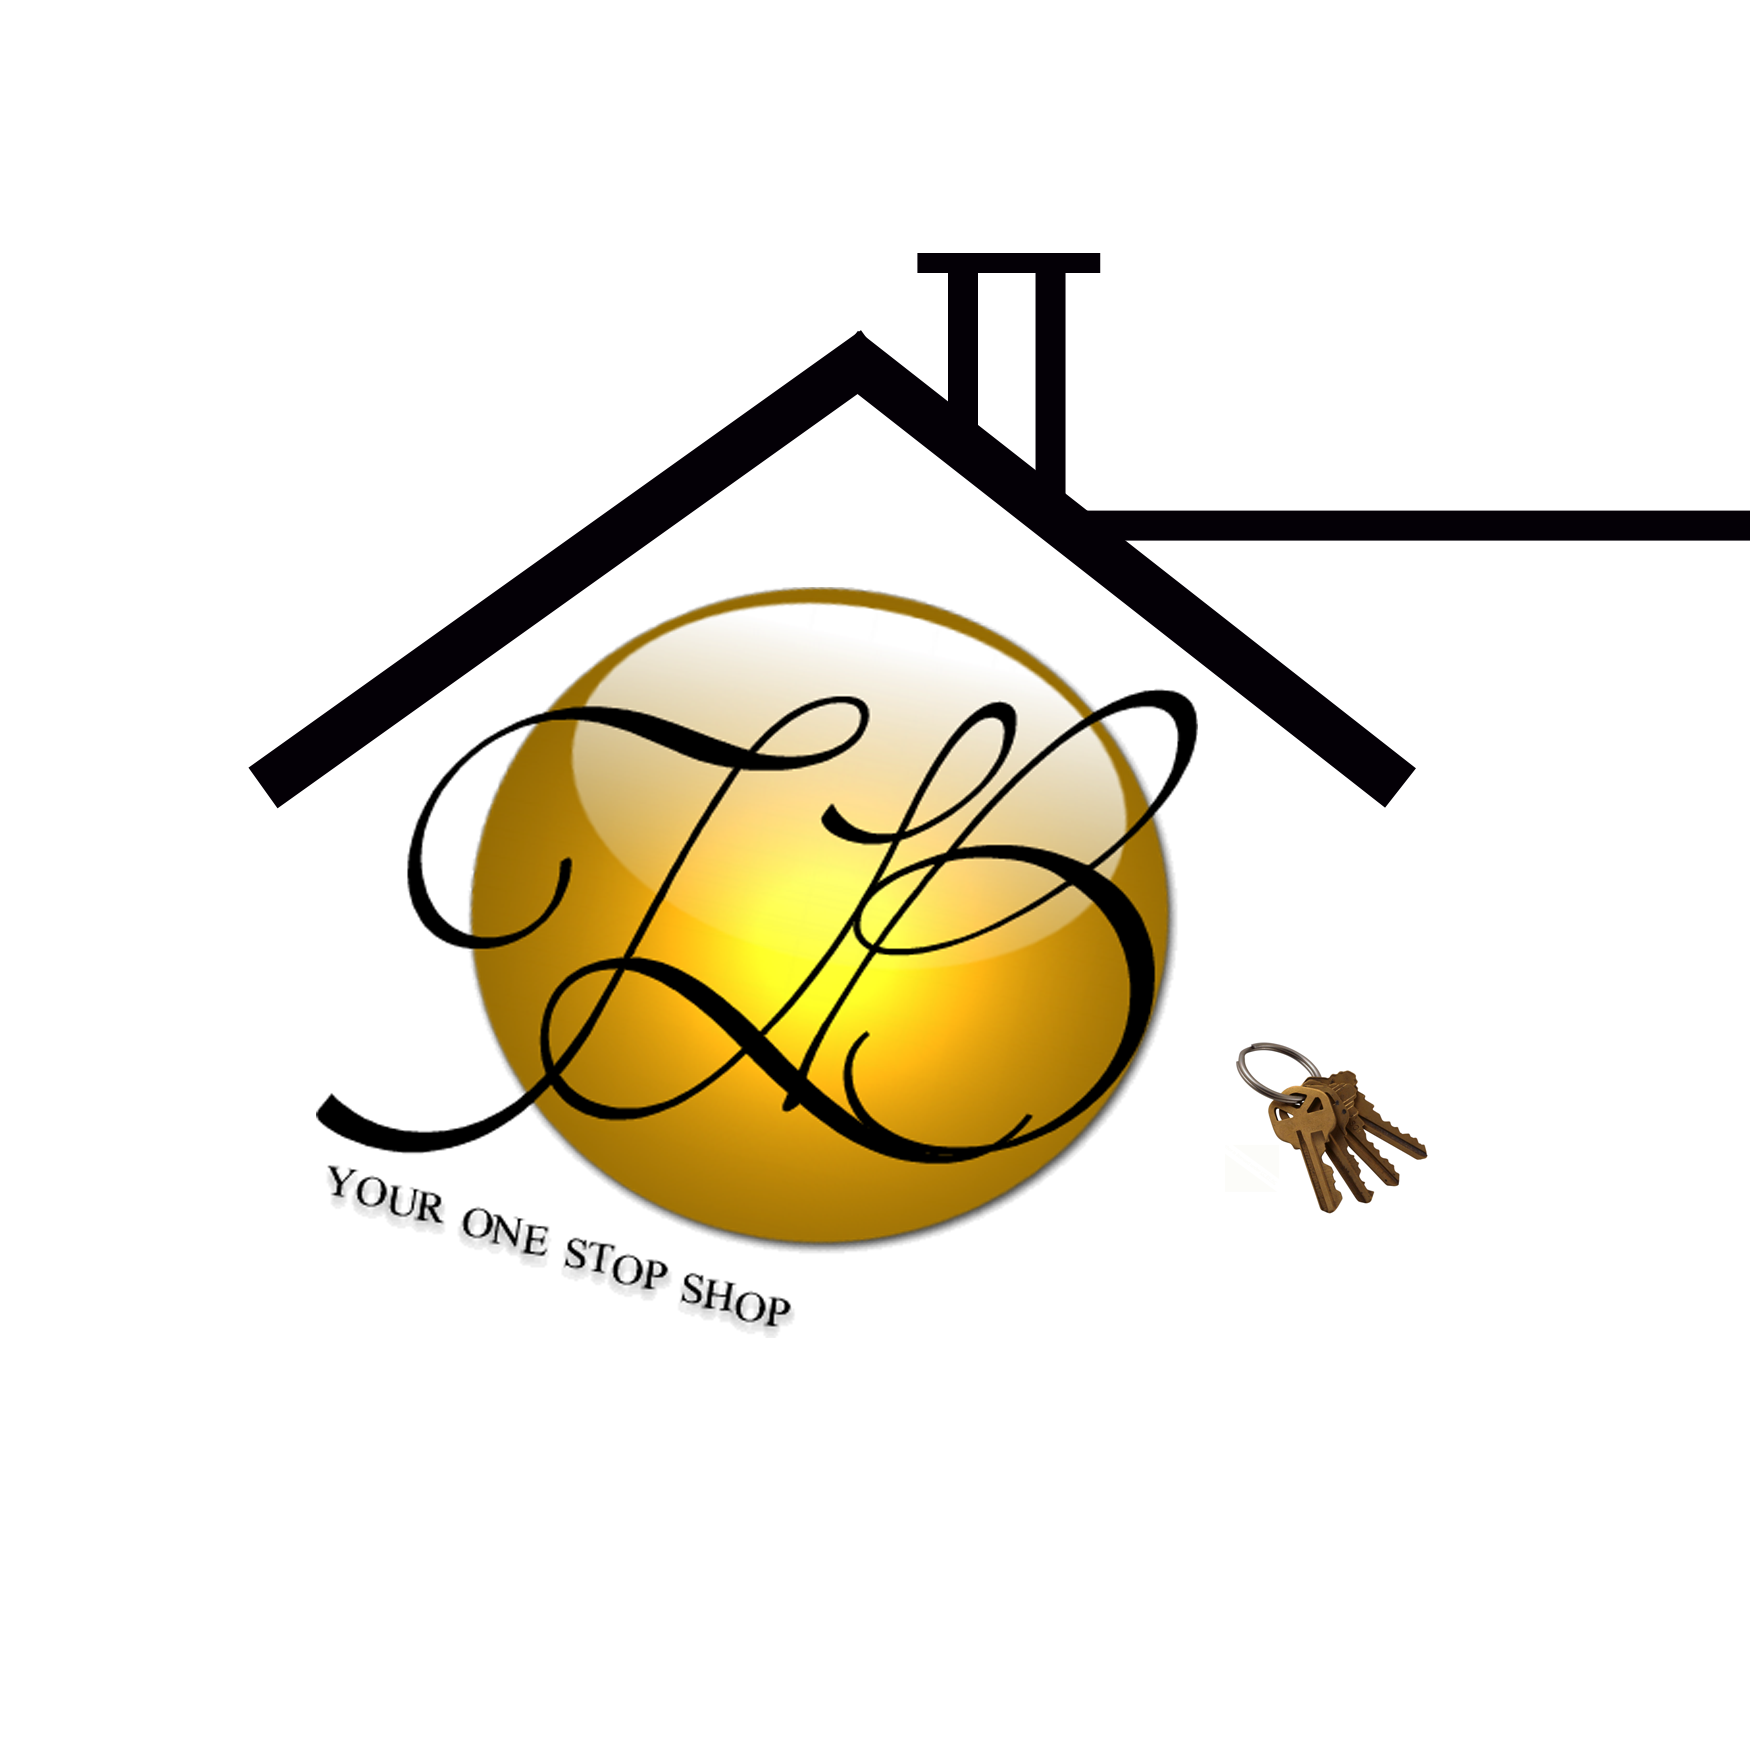 logo image registered by L.O.